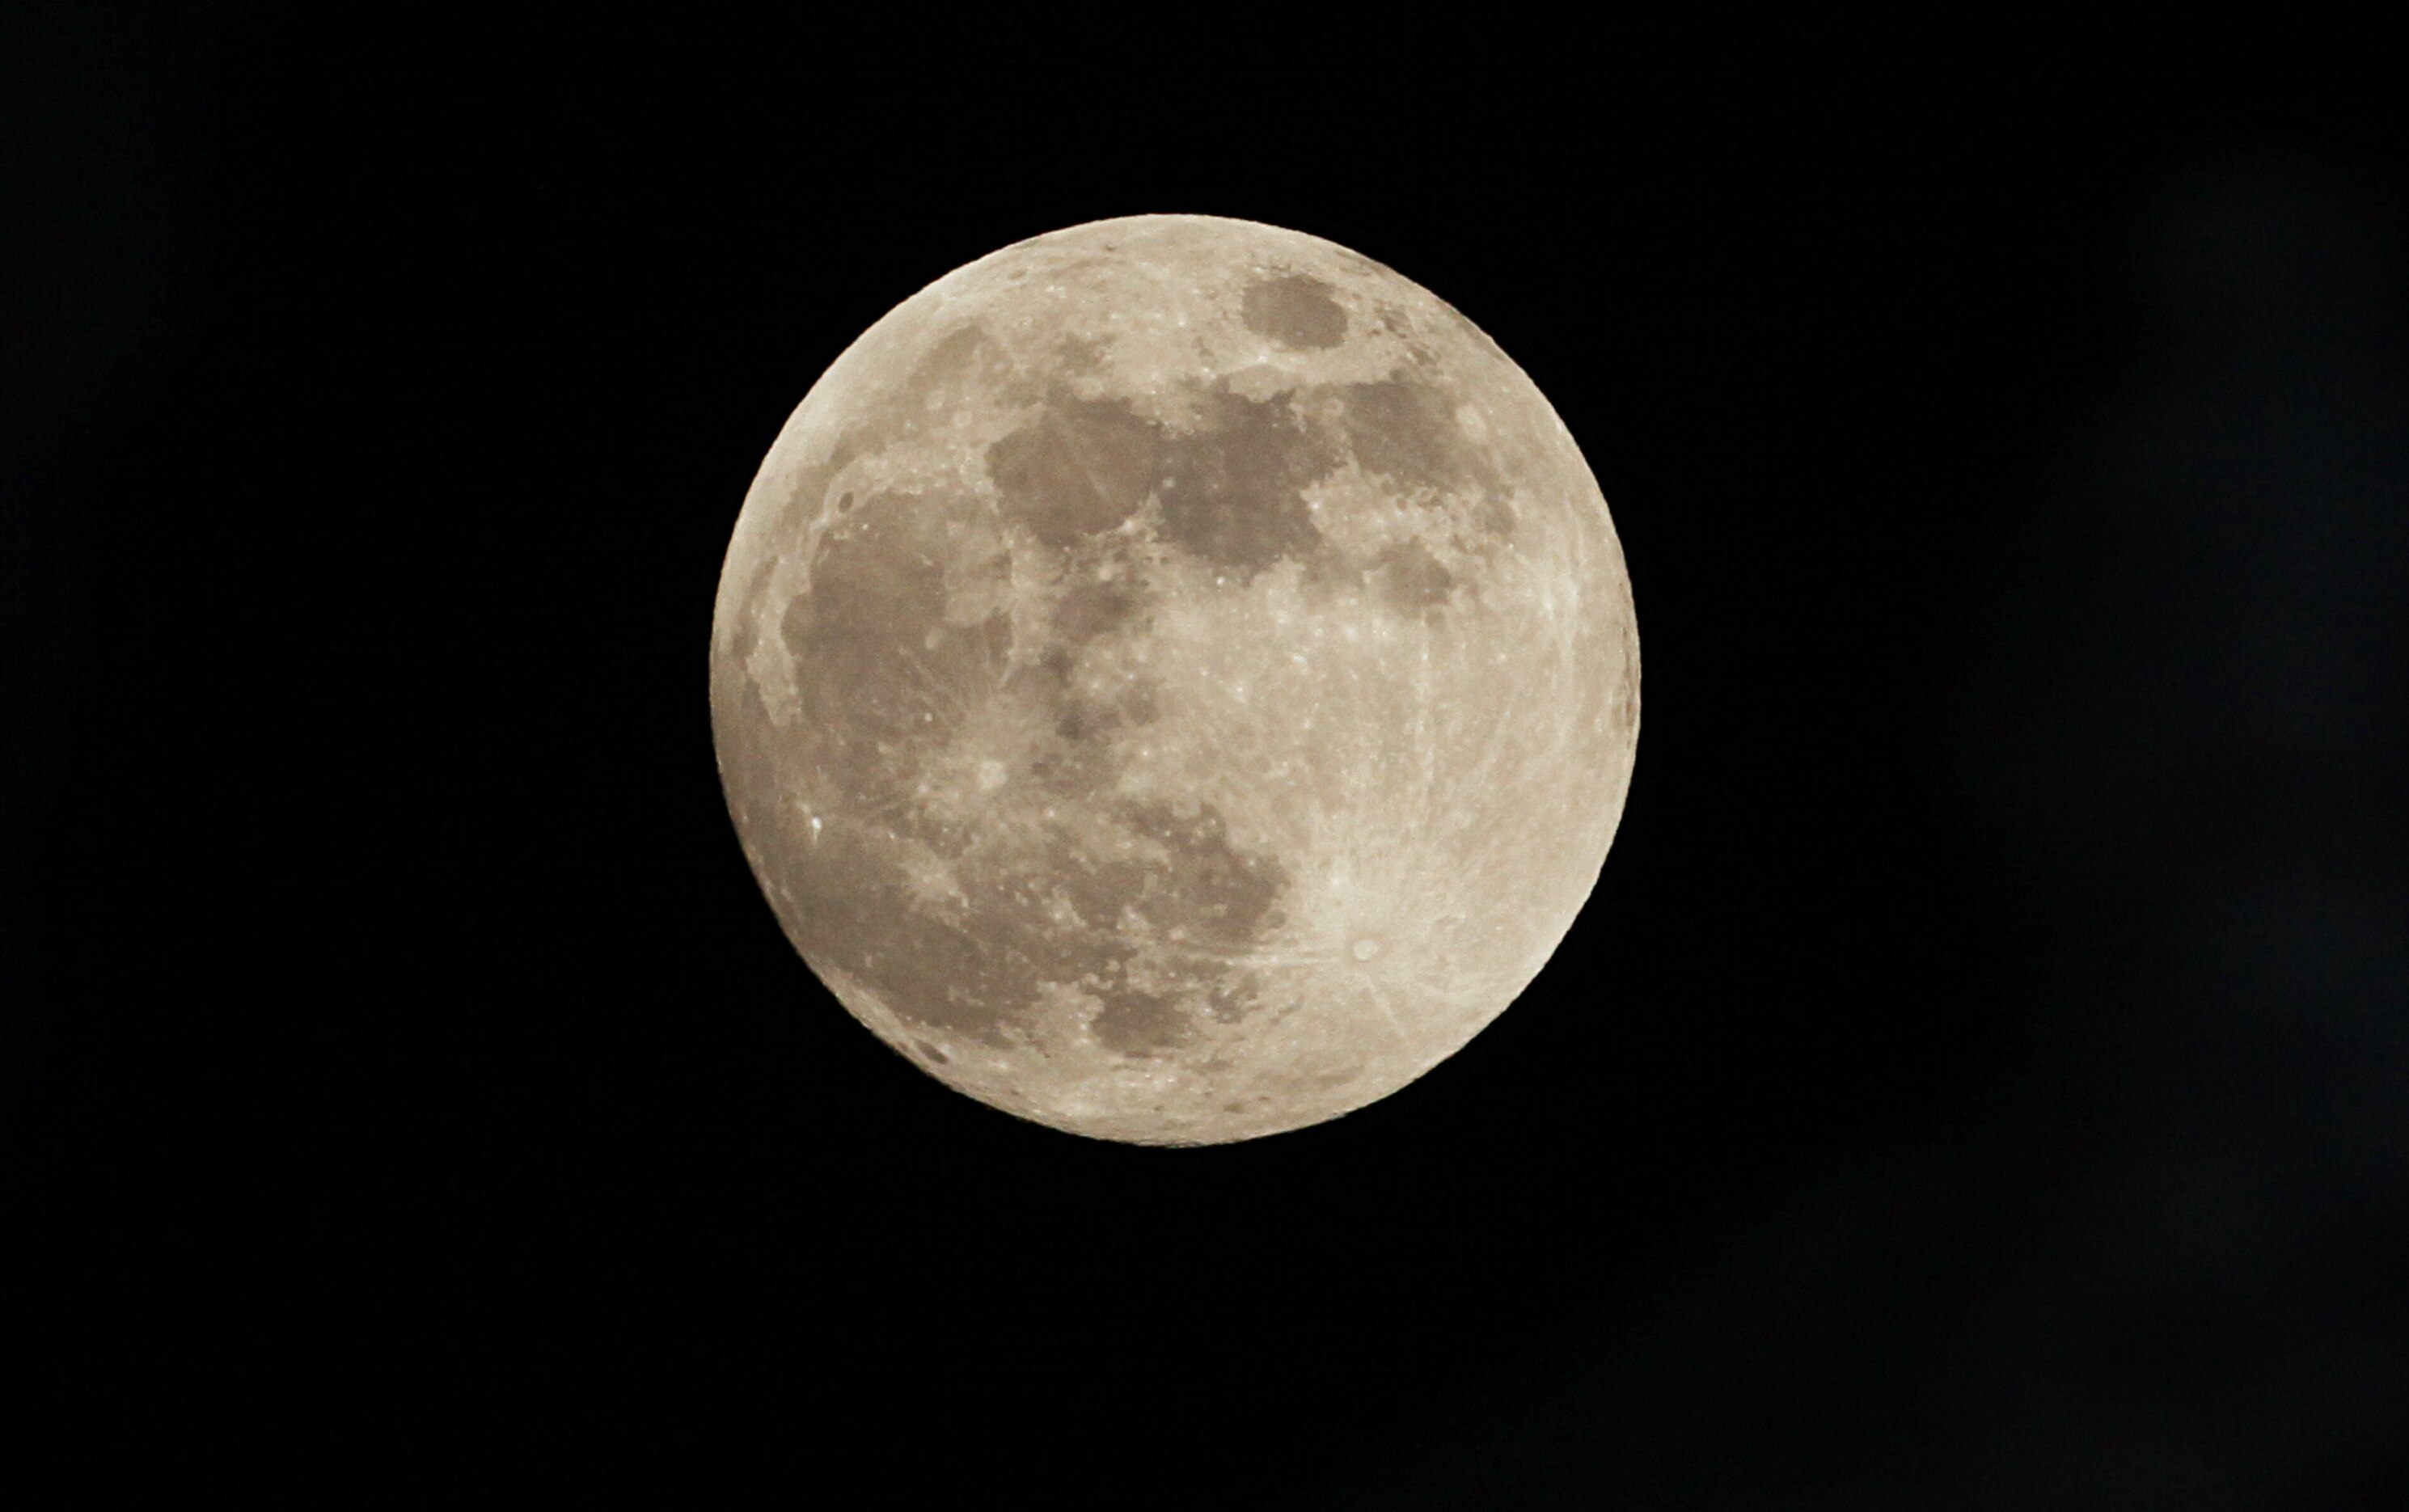 मेक्सिको शहरात बुधवारी असं मनमोहक चंद्राचं रूप दिसलं... गेल्या काही वर्षांतील चंद्राचं हे तेजस्वी रूप होतं...

 
